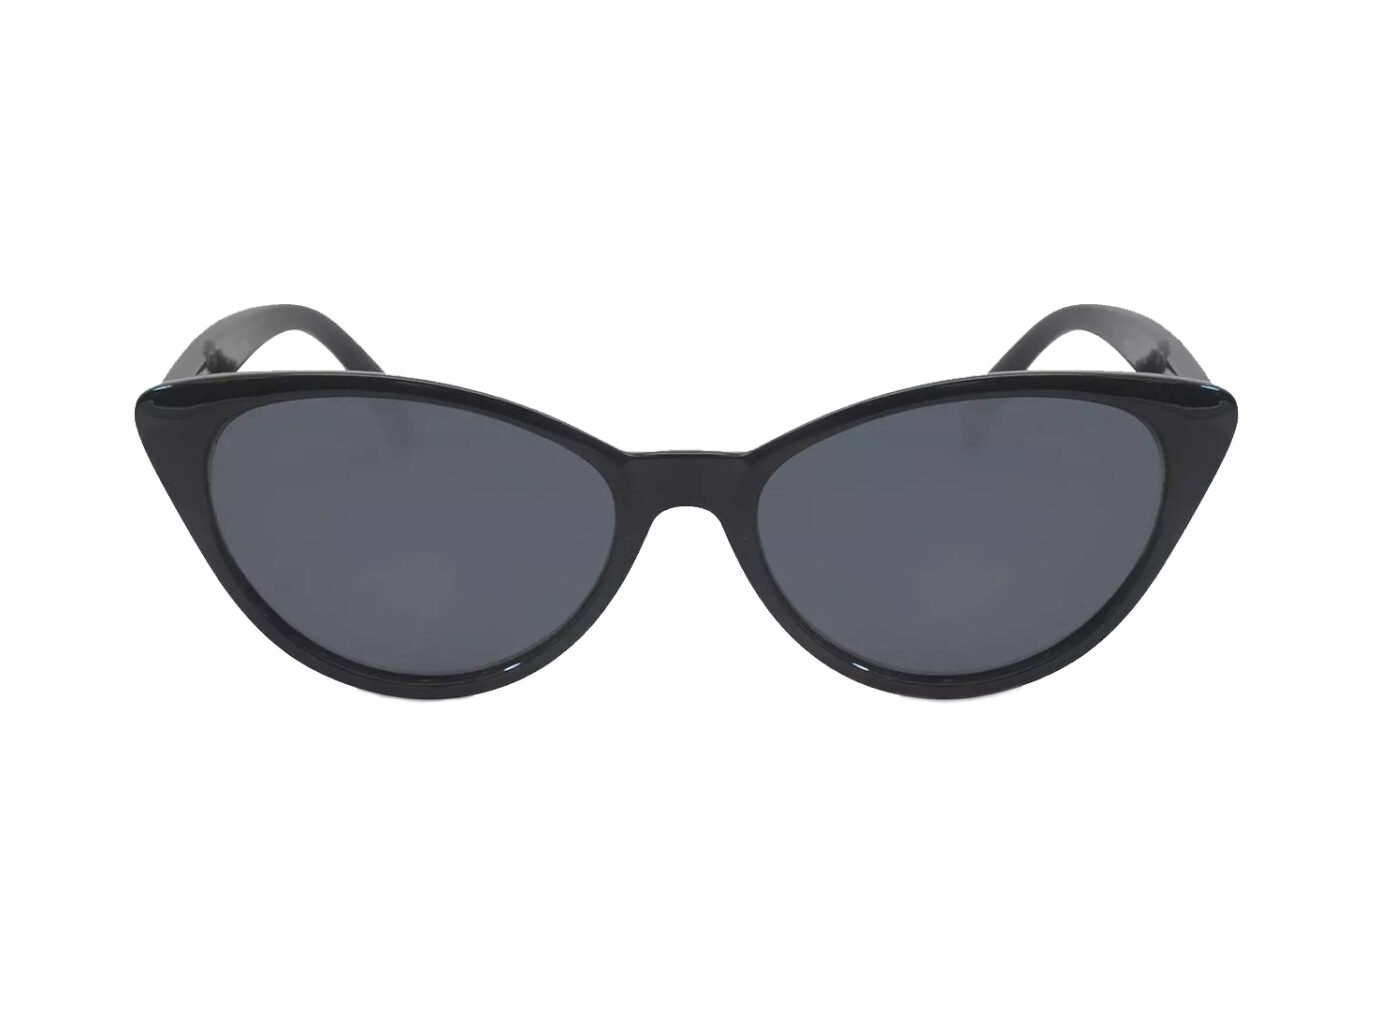 Women's Plastic Cateye Sunglasses